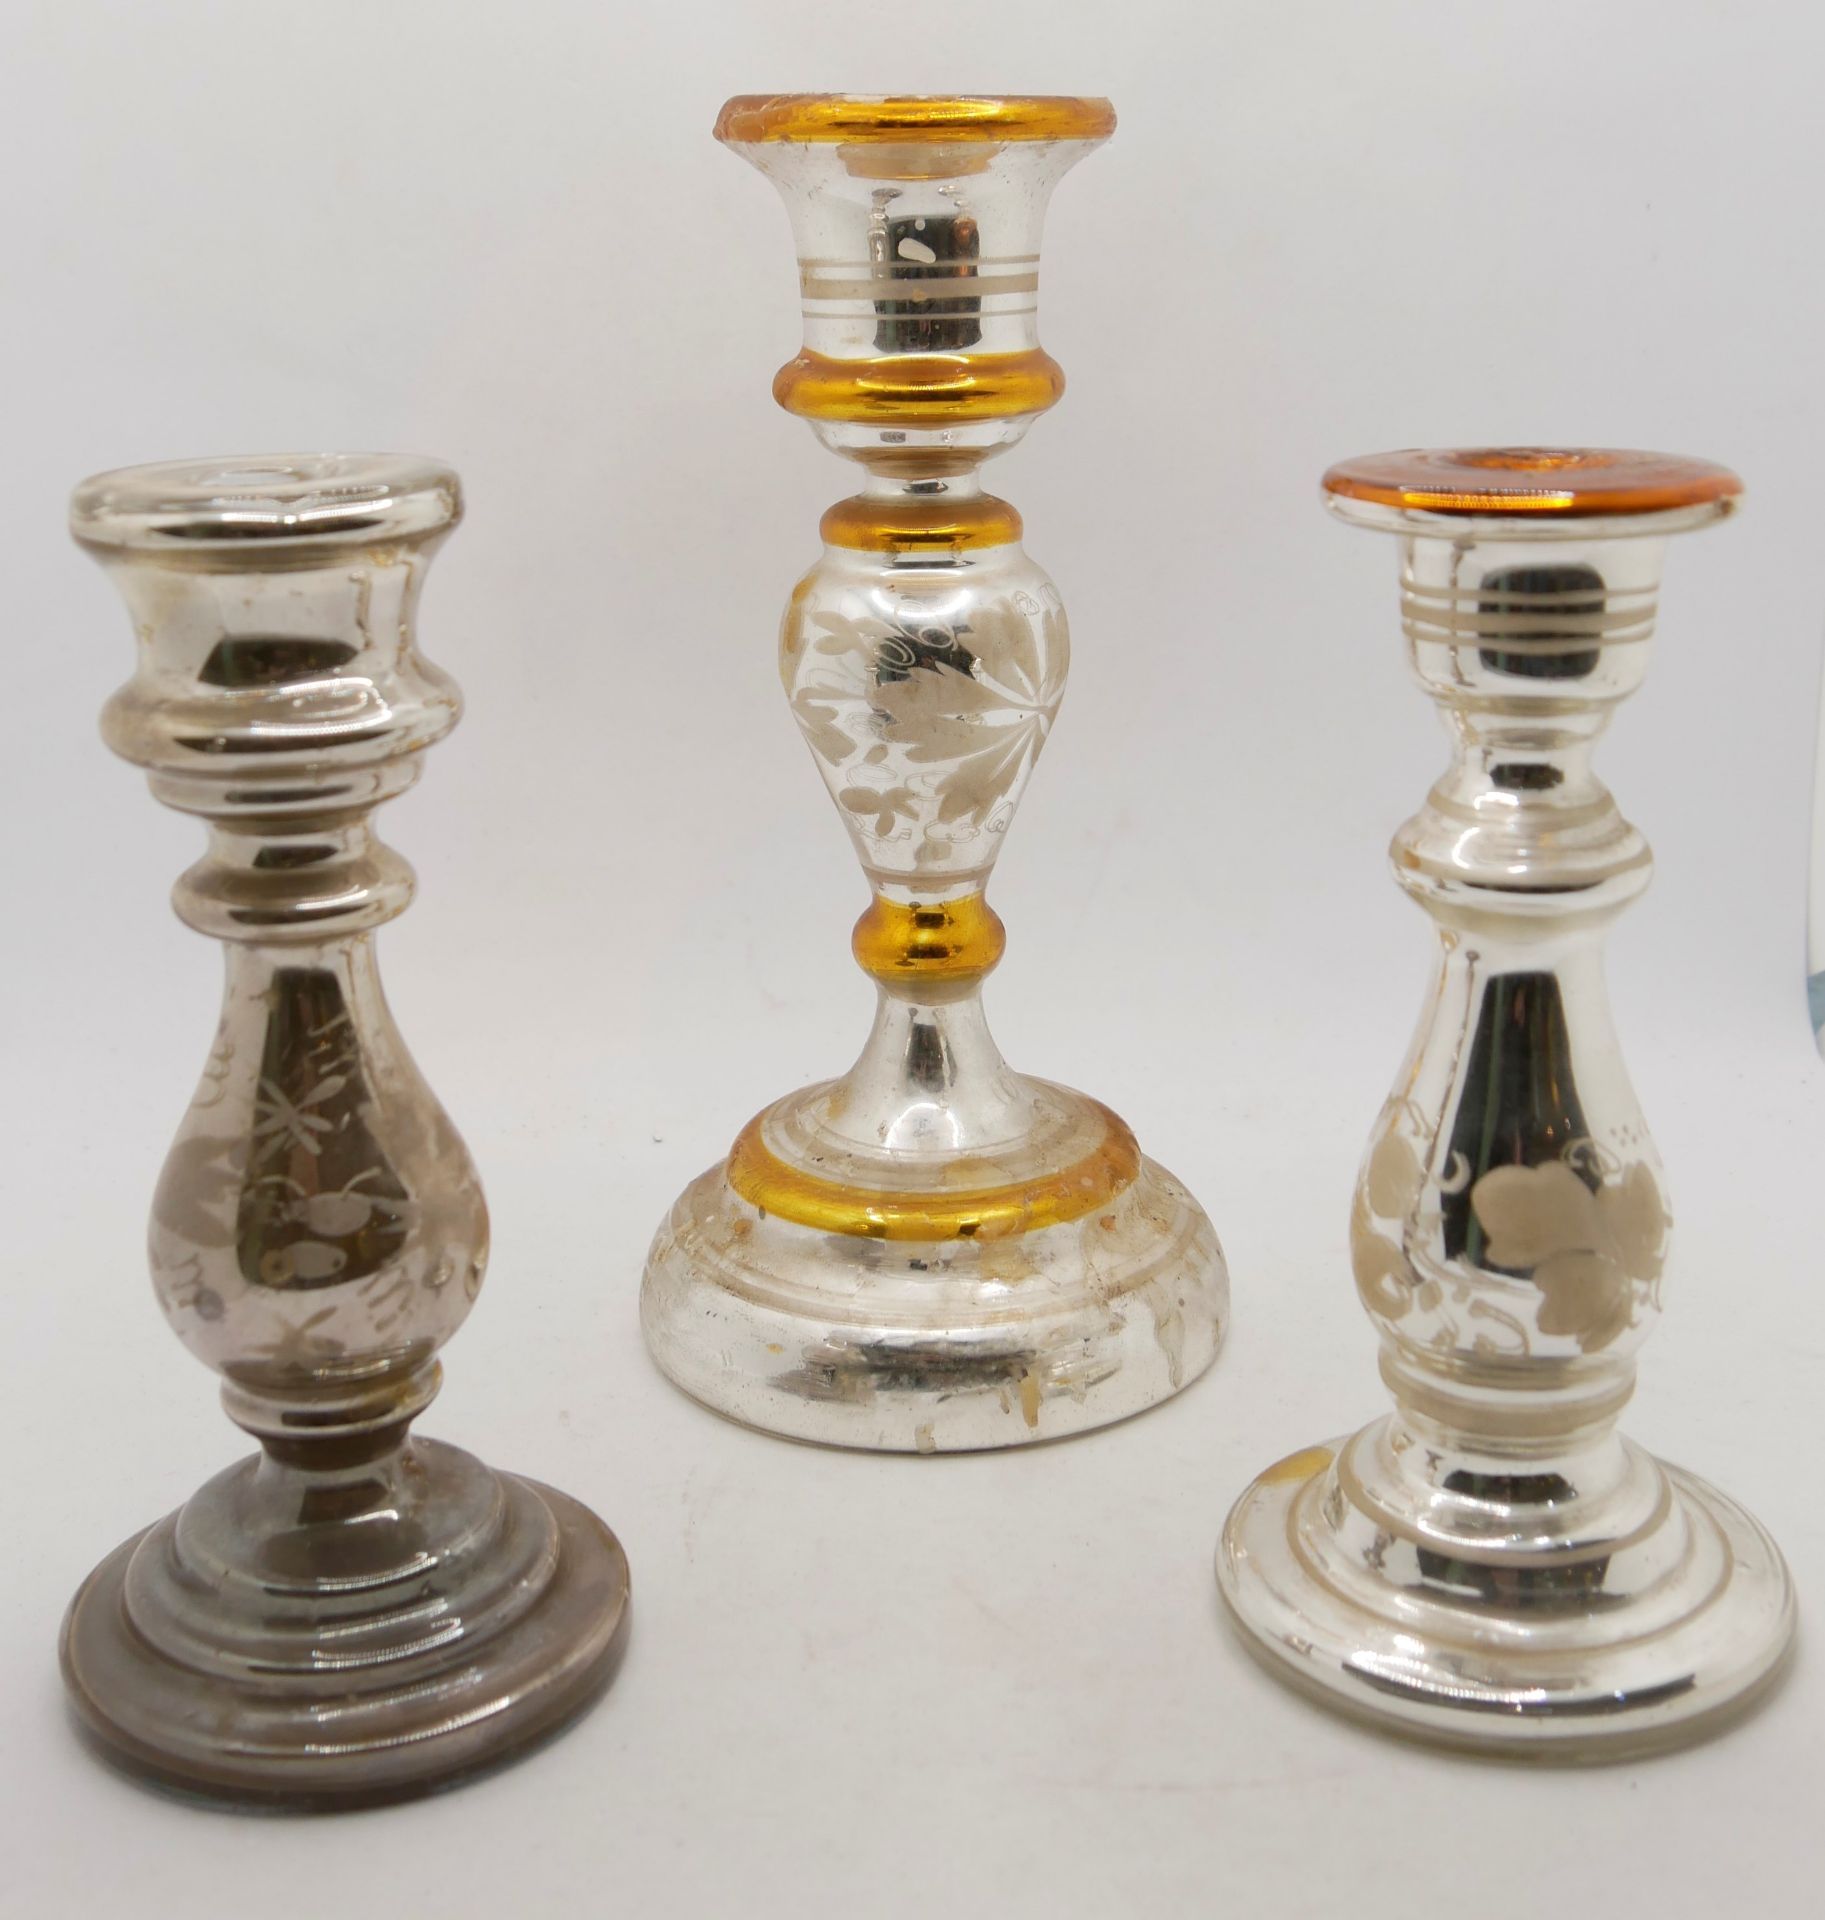 Aus Sammlung - 3 antike Kerzenständer mit floralem Bemalung aus Bauernsilber, verschiedene Größen.